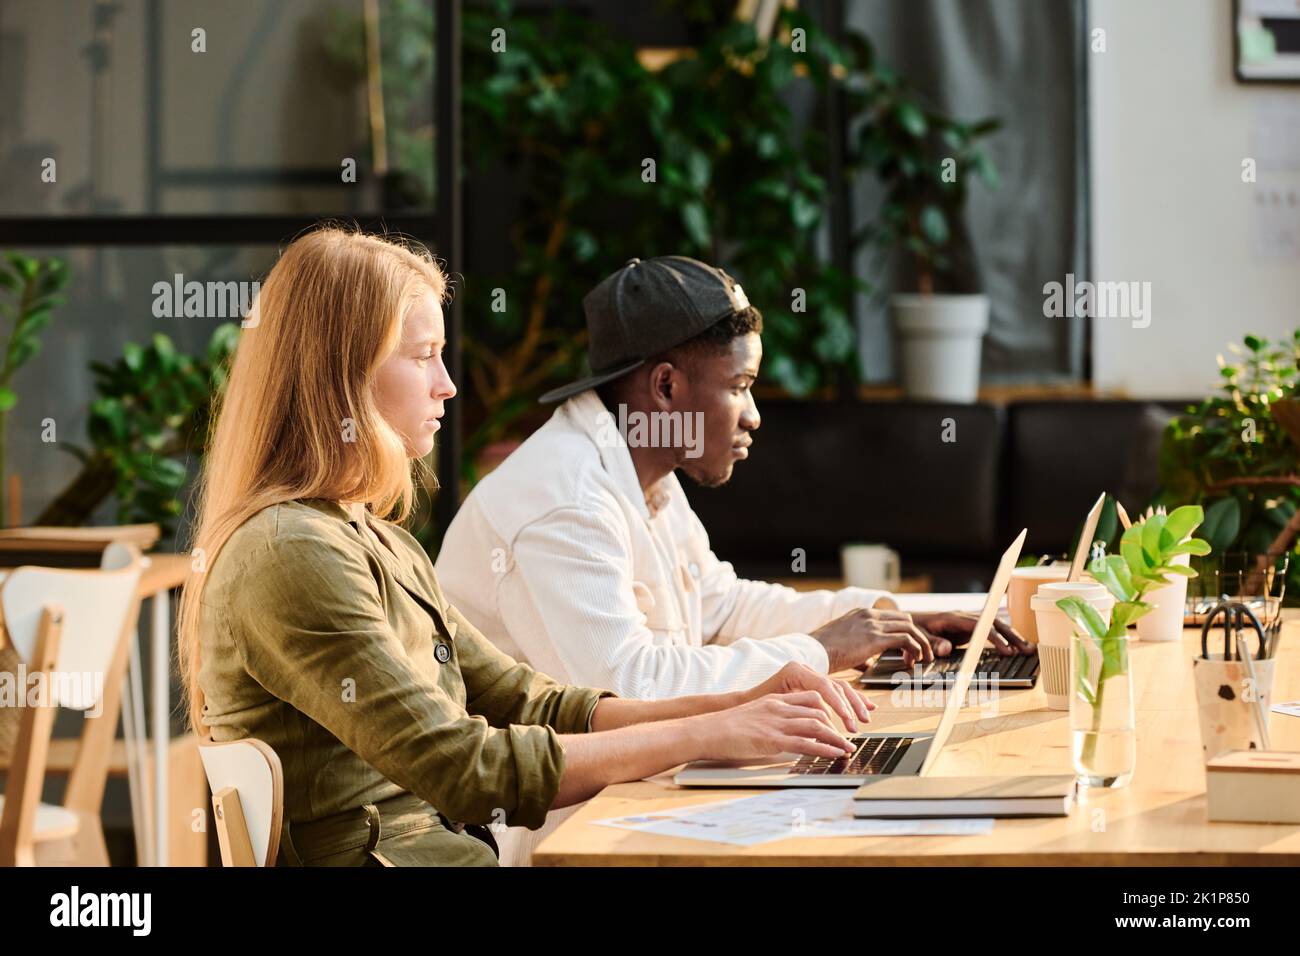 Vista lateral de dos jóvenes diseñadores interculturales o analistas que trabajan en red por escritorio delante de las pantallas de los ordenadores portátiles en la oficina openspace con plantas verdes Foto de stock